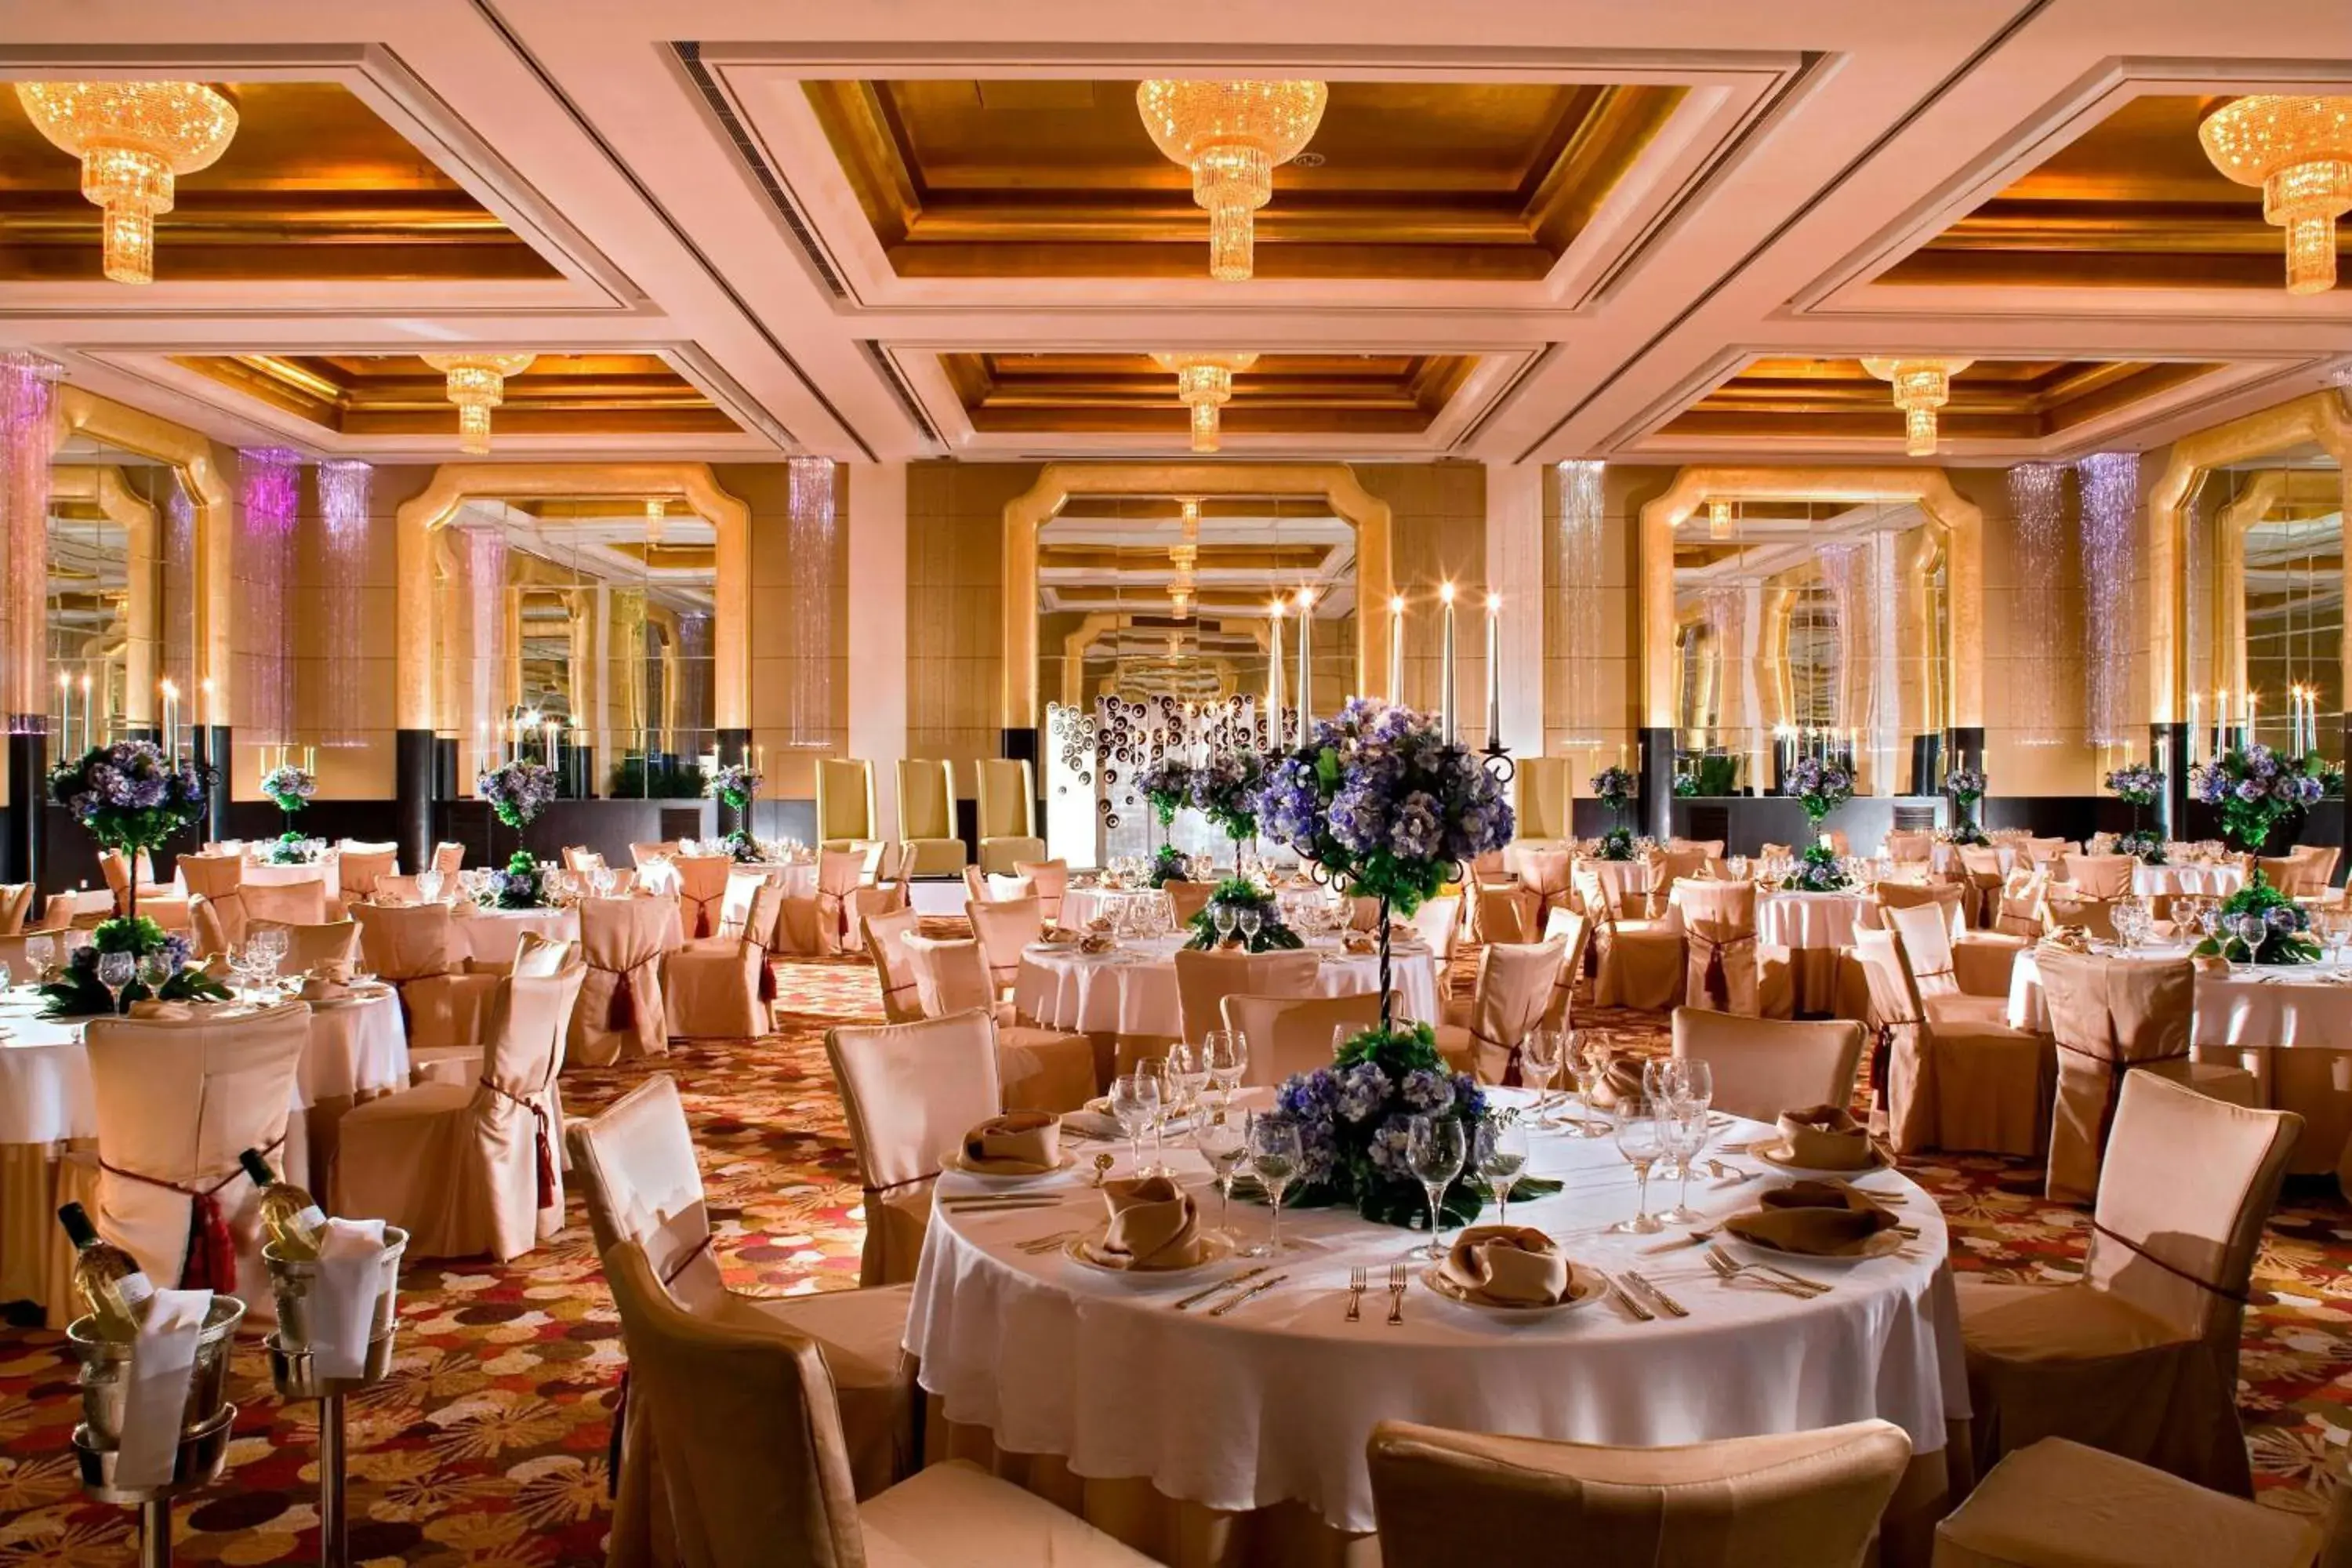 Banquet/Function facilities, Banquet Facilities in Sheraton Guiyang Hotel